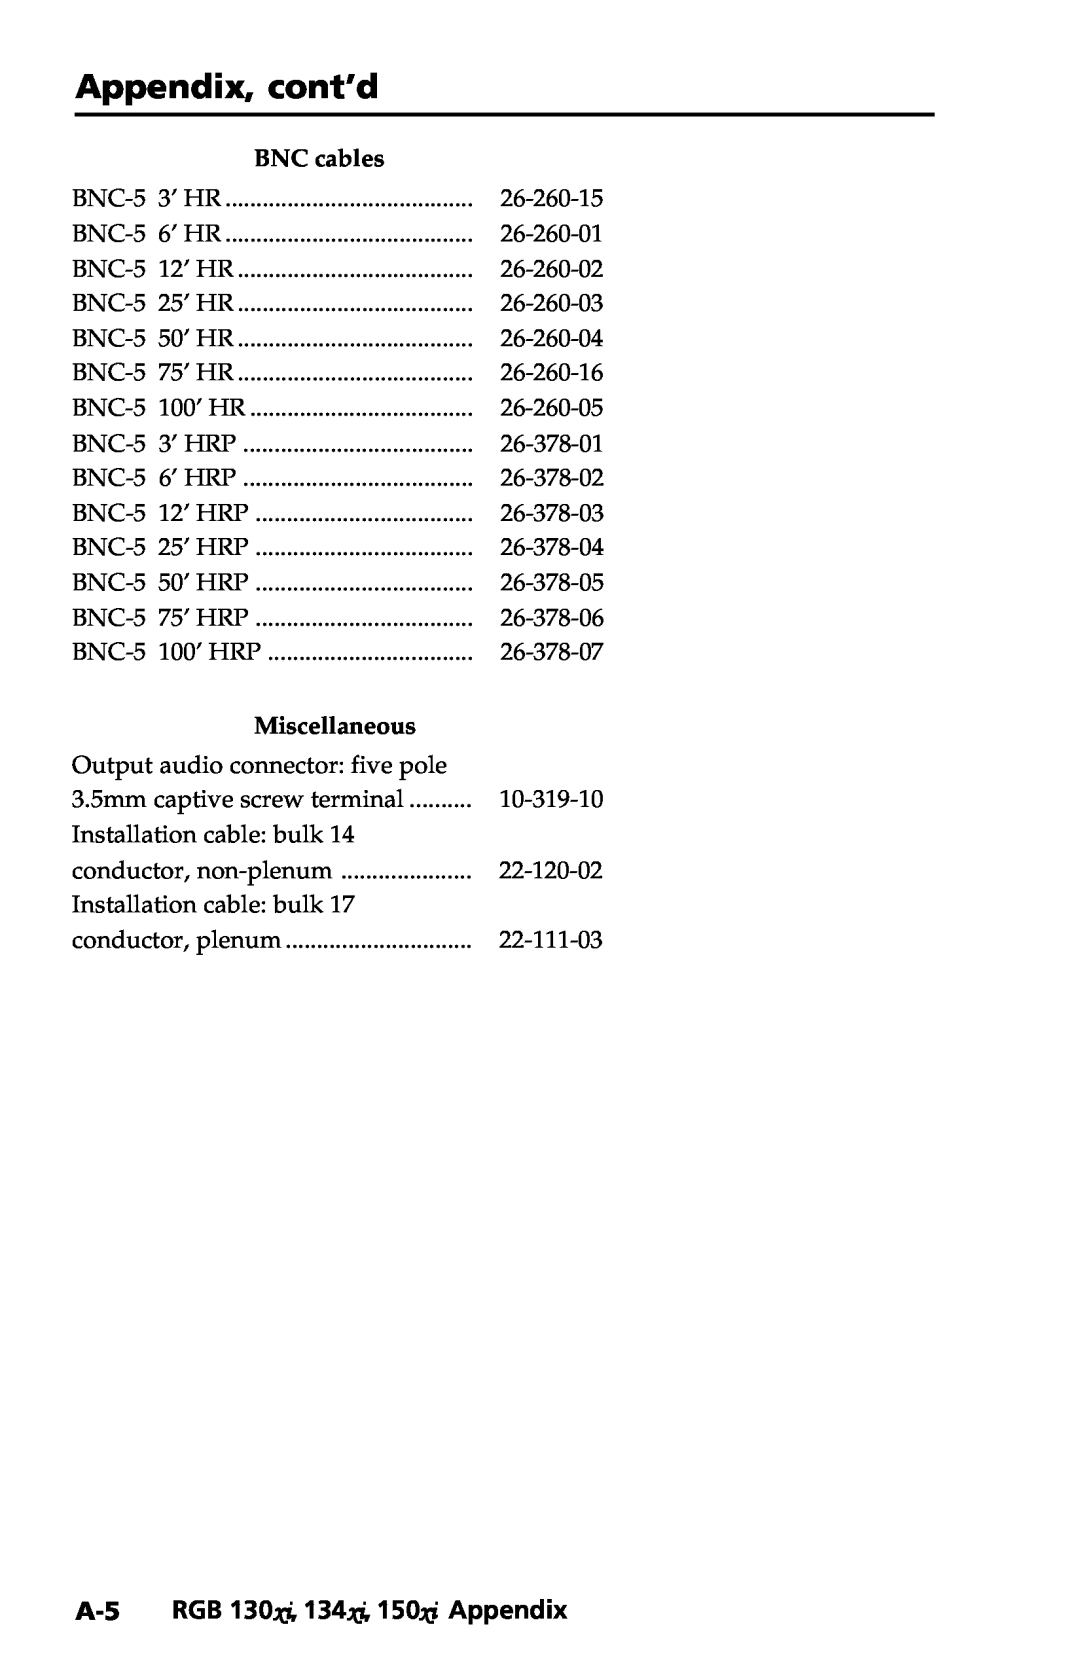 Extron electronic user manual A-5 RGB 130xi, 134xi, 150xi Appendix, Appendix, cont’d, BNC cables, Miscellaneous 